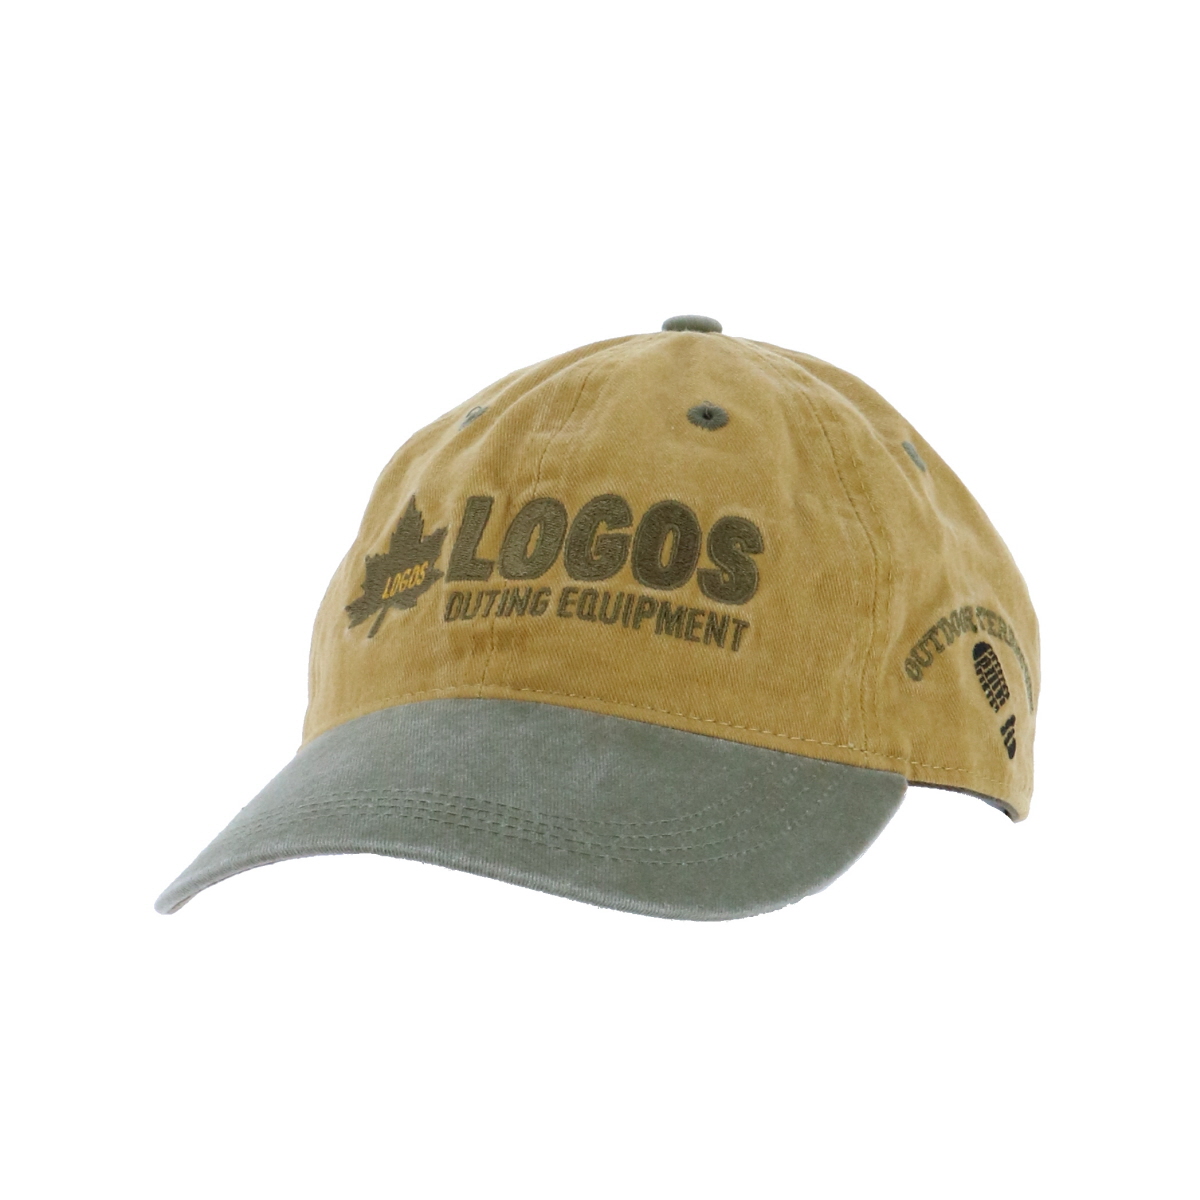 LOGOS CAP|アパレル|アクセサリー|帽子|製品情報|ロゴスショップ